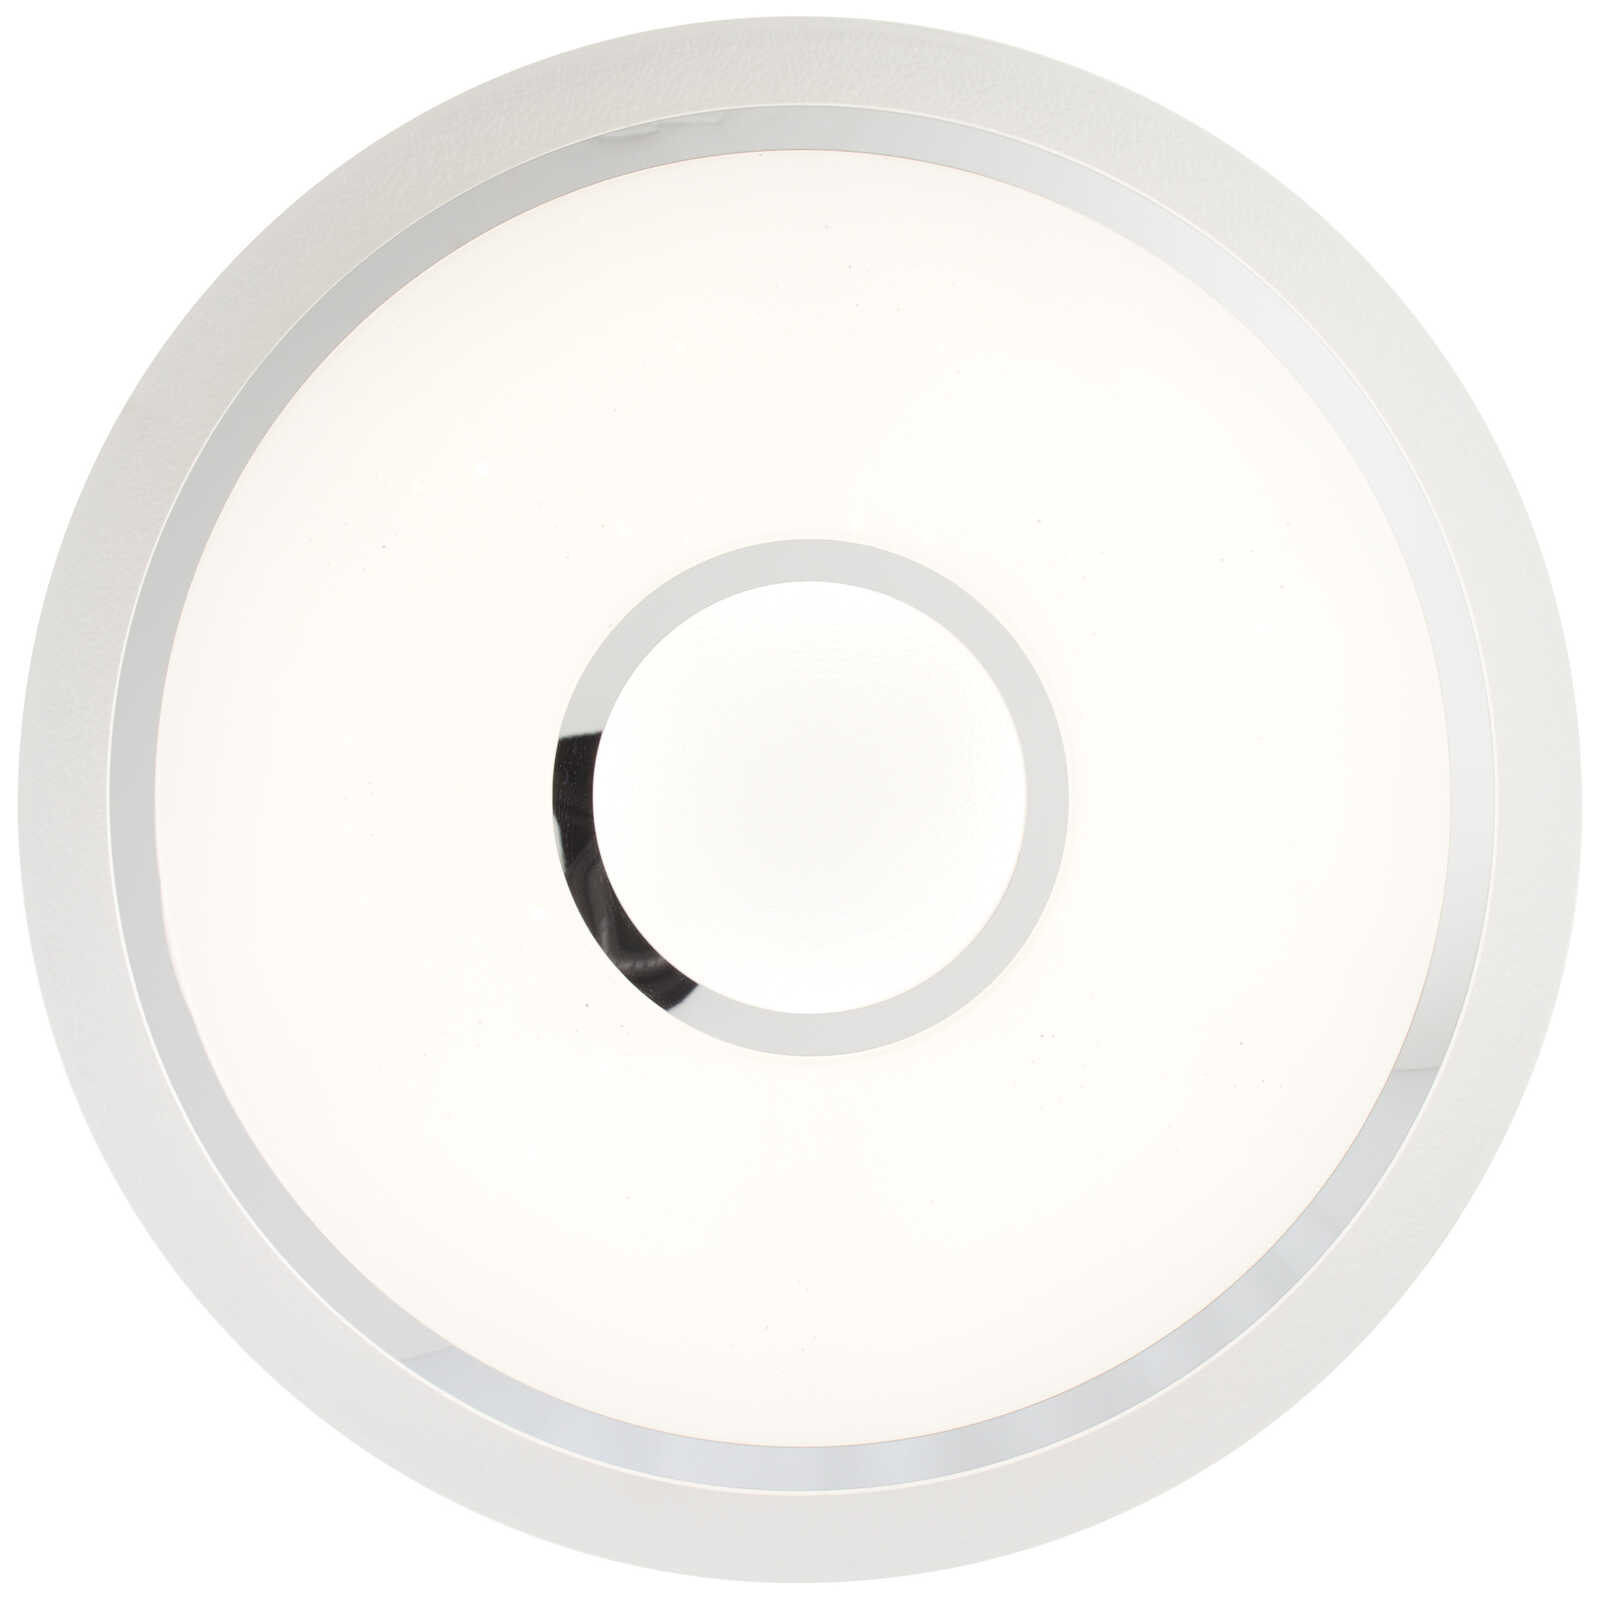             Plastic ceiling light - Michel - White
        